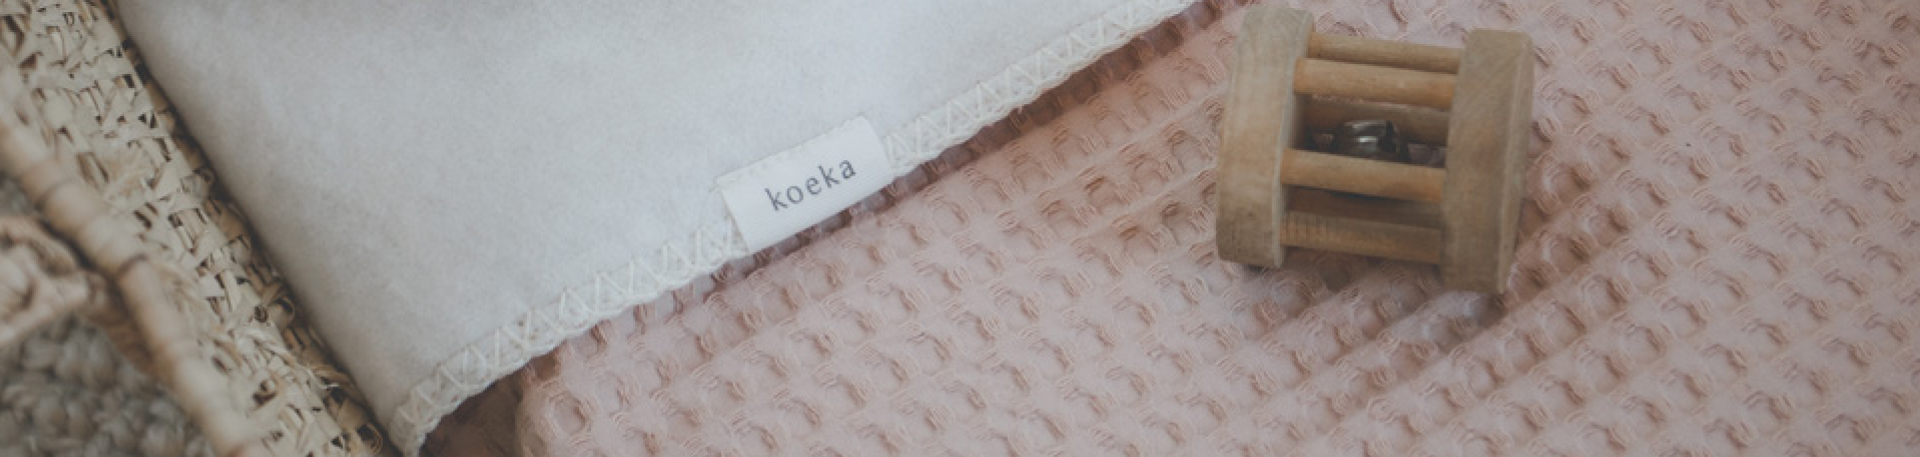 Koeka Autositz Fußsack 0+ 3/5 Punkte Plüsch Oslo rosa salt online kaufen